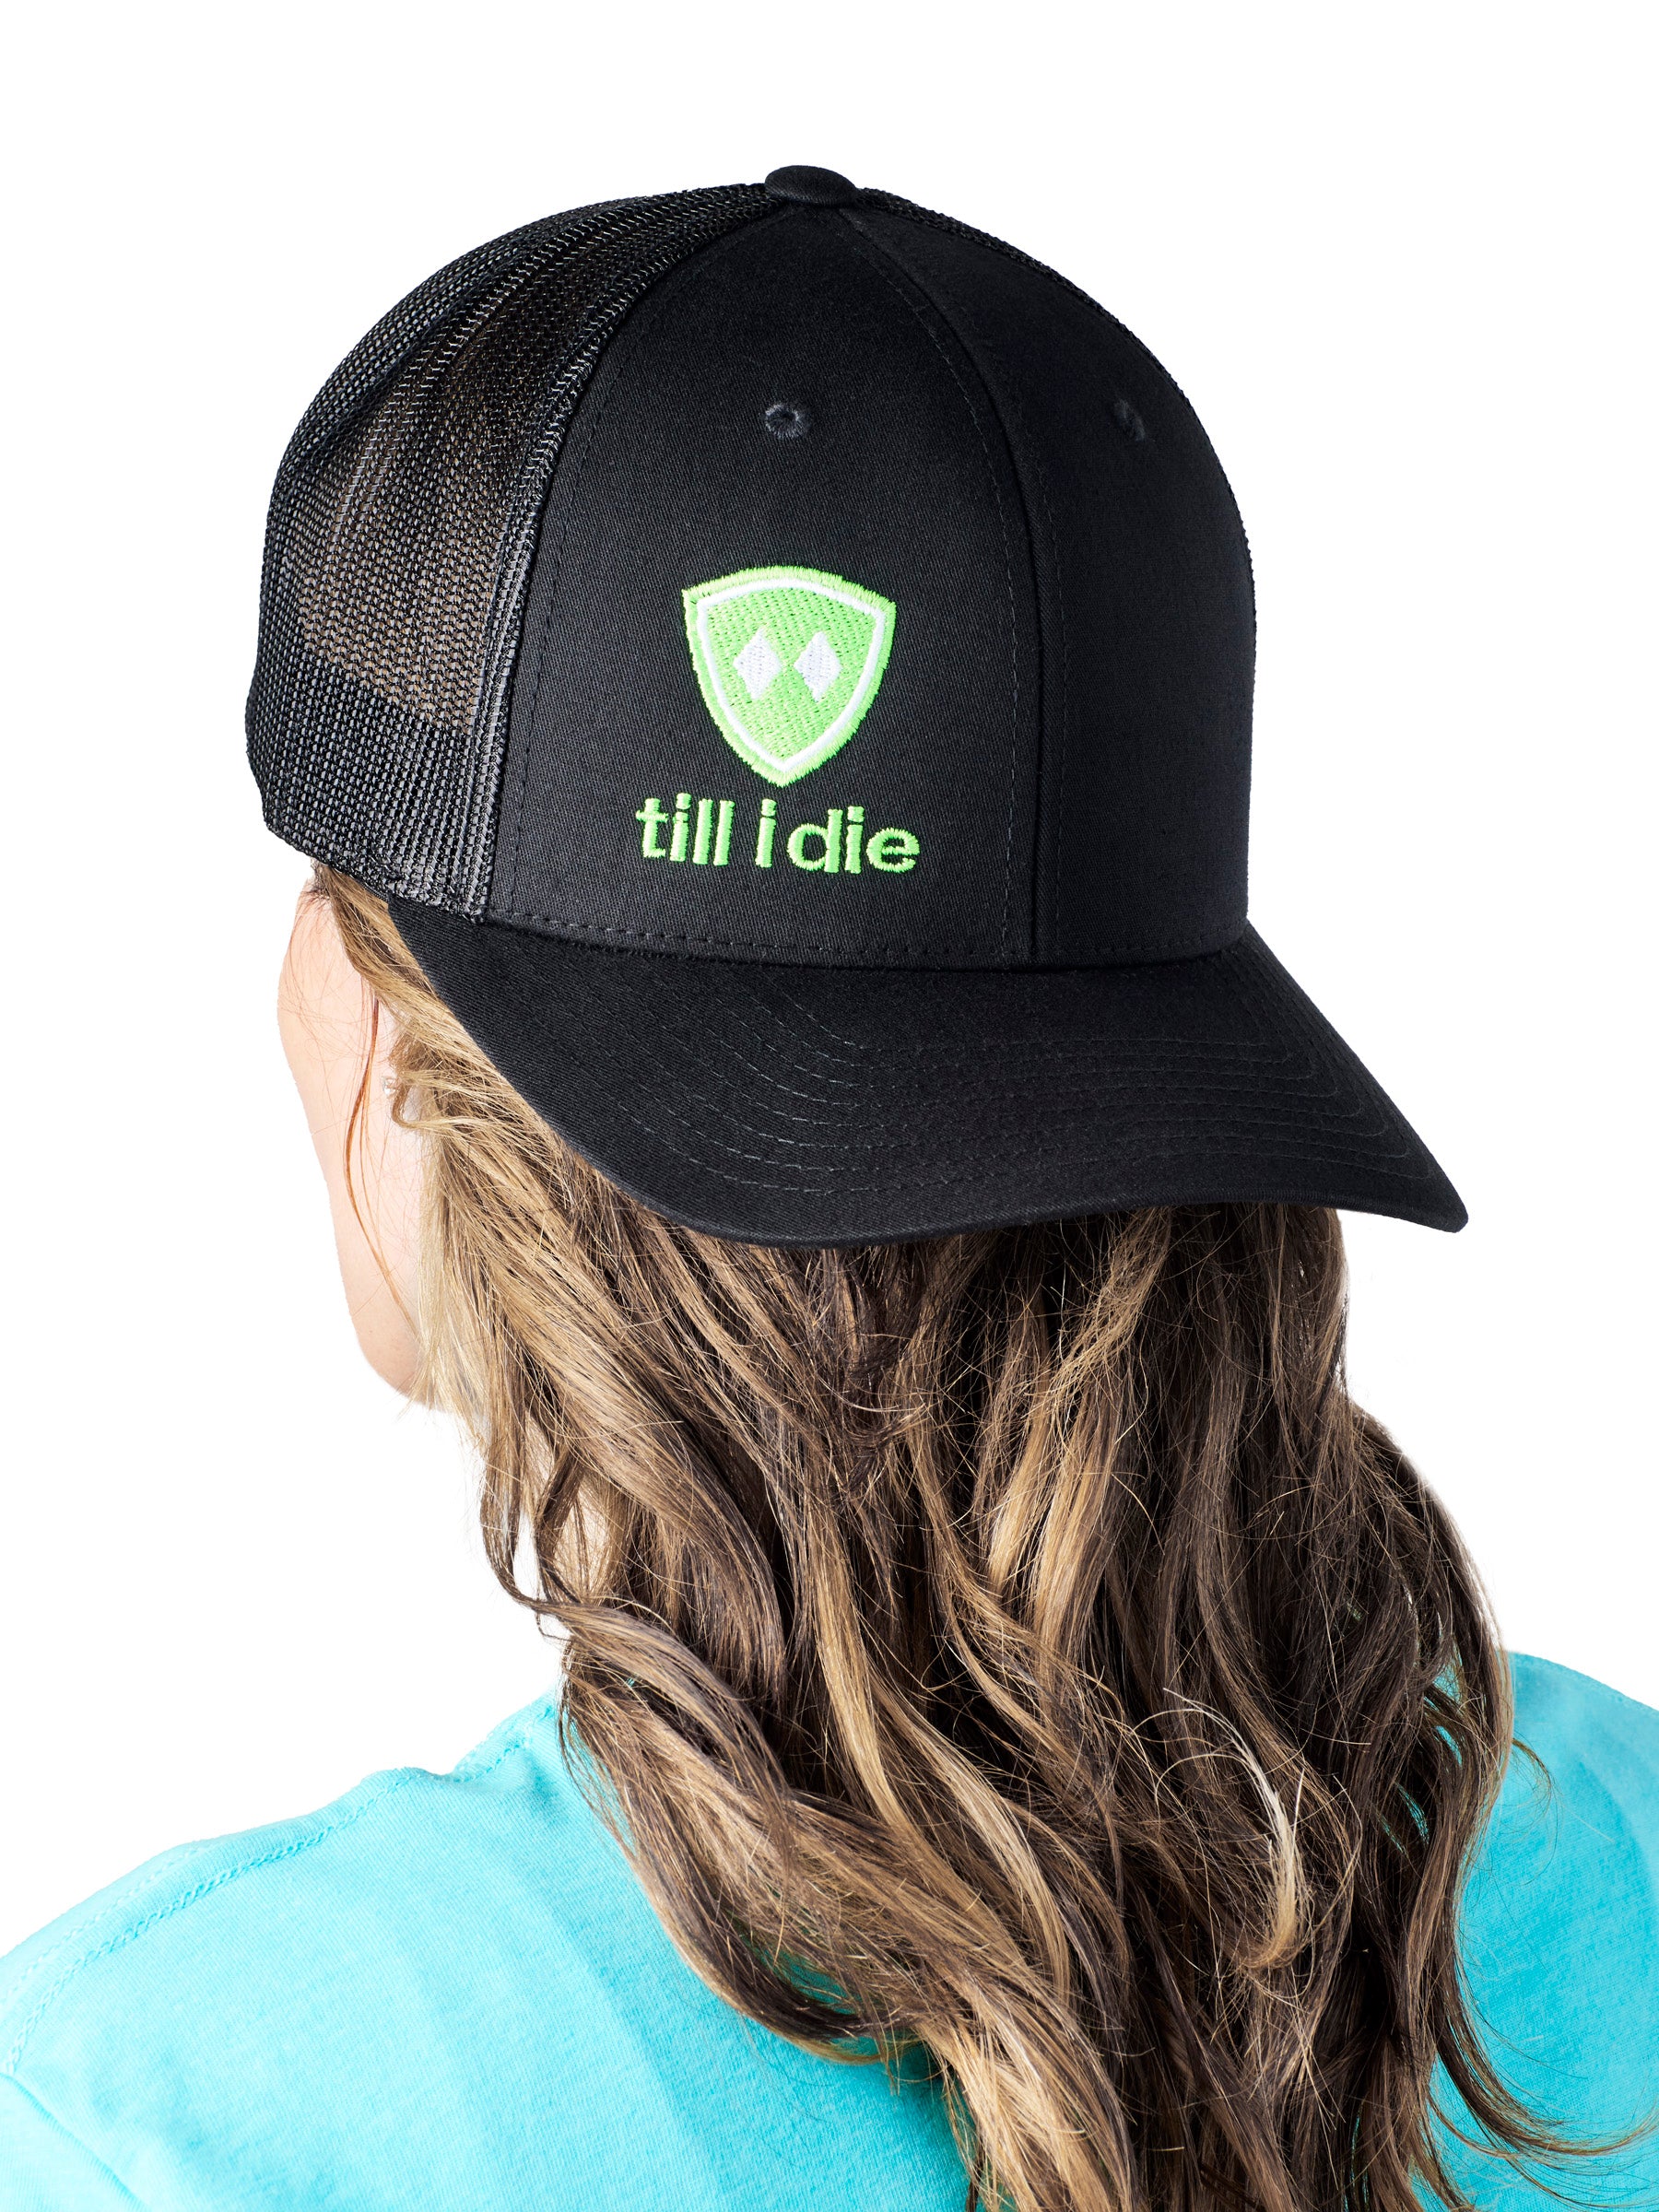 Till I Die Logo // Classic Trucker Hat // Black + Neon Green & White